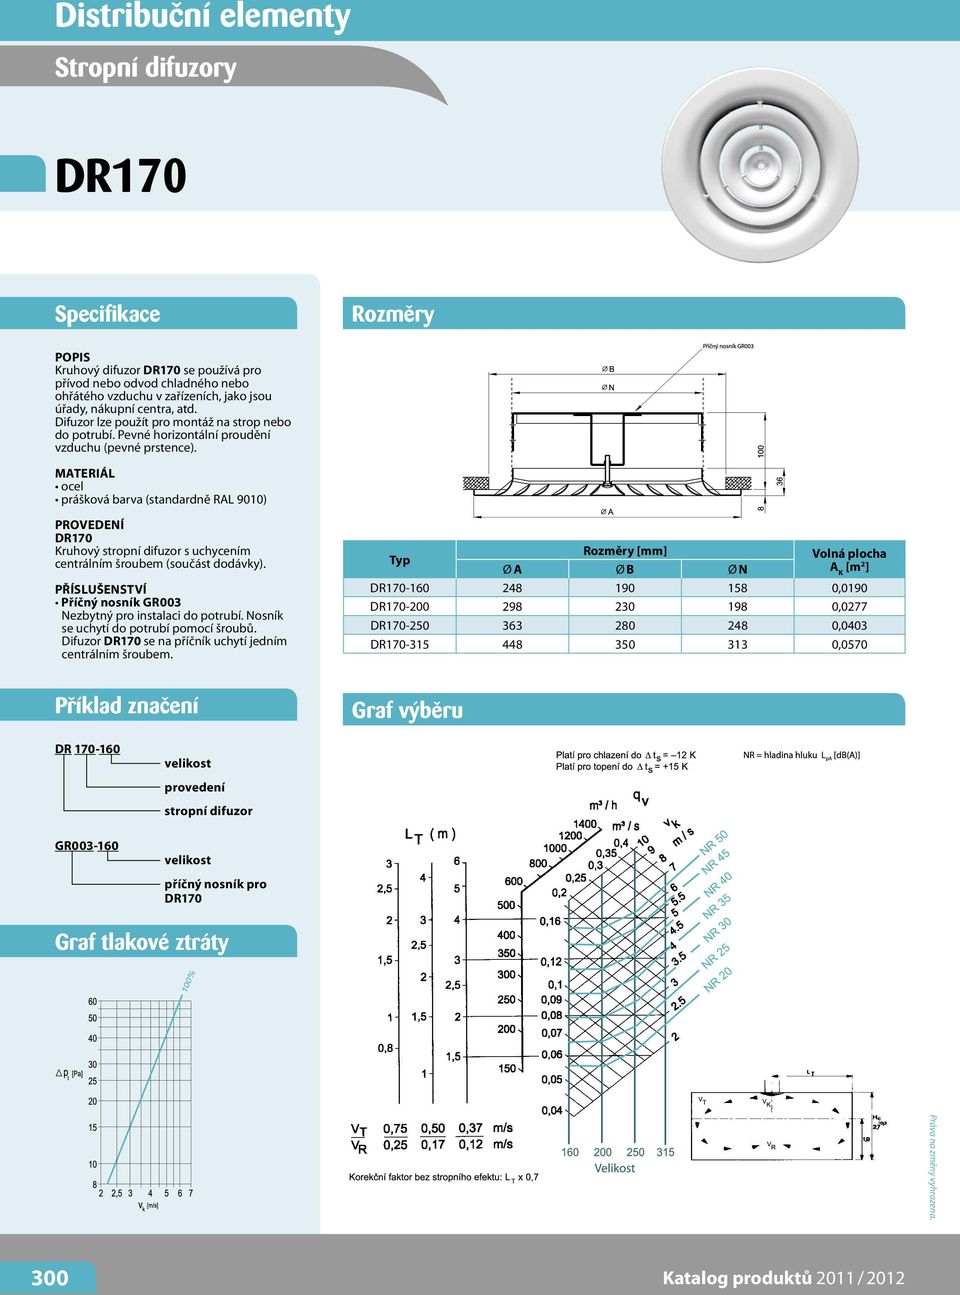 MATERIÁL ocel prášková barva (standardně RAL 9010) provedení DR170 Kruhový stropní difuzor s uchycením centrálním šroubem (součást dodávky).